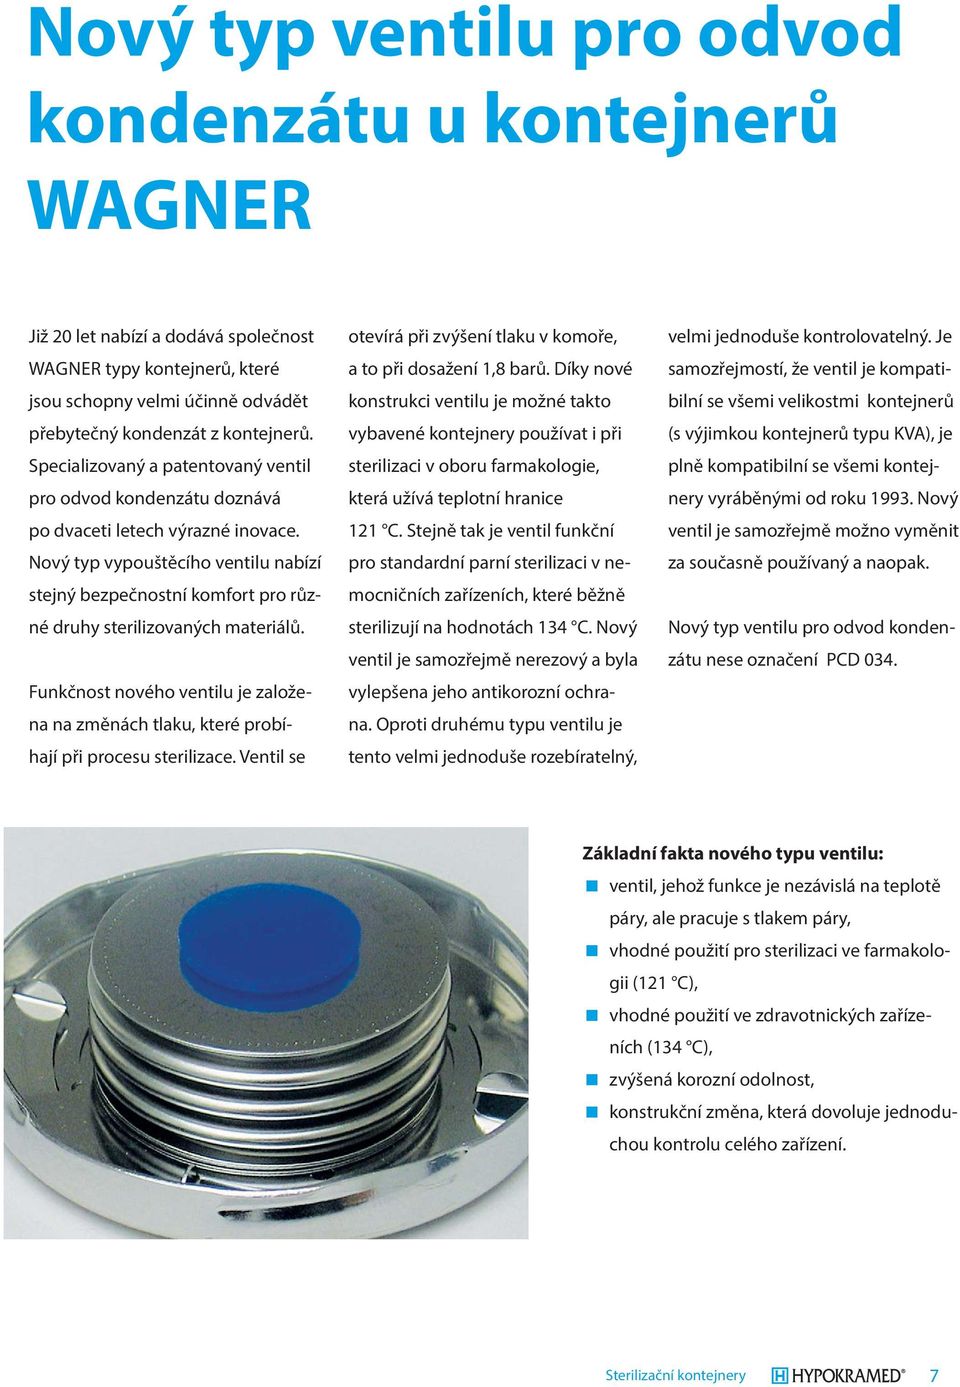 Nový typ vypouštěcího ventilu nabízí stejný bezpečnostní komfort pro různé druhy sterilizovaných materiálů.